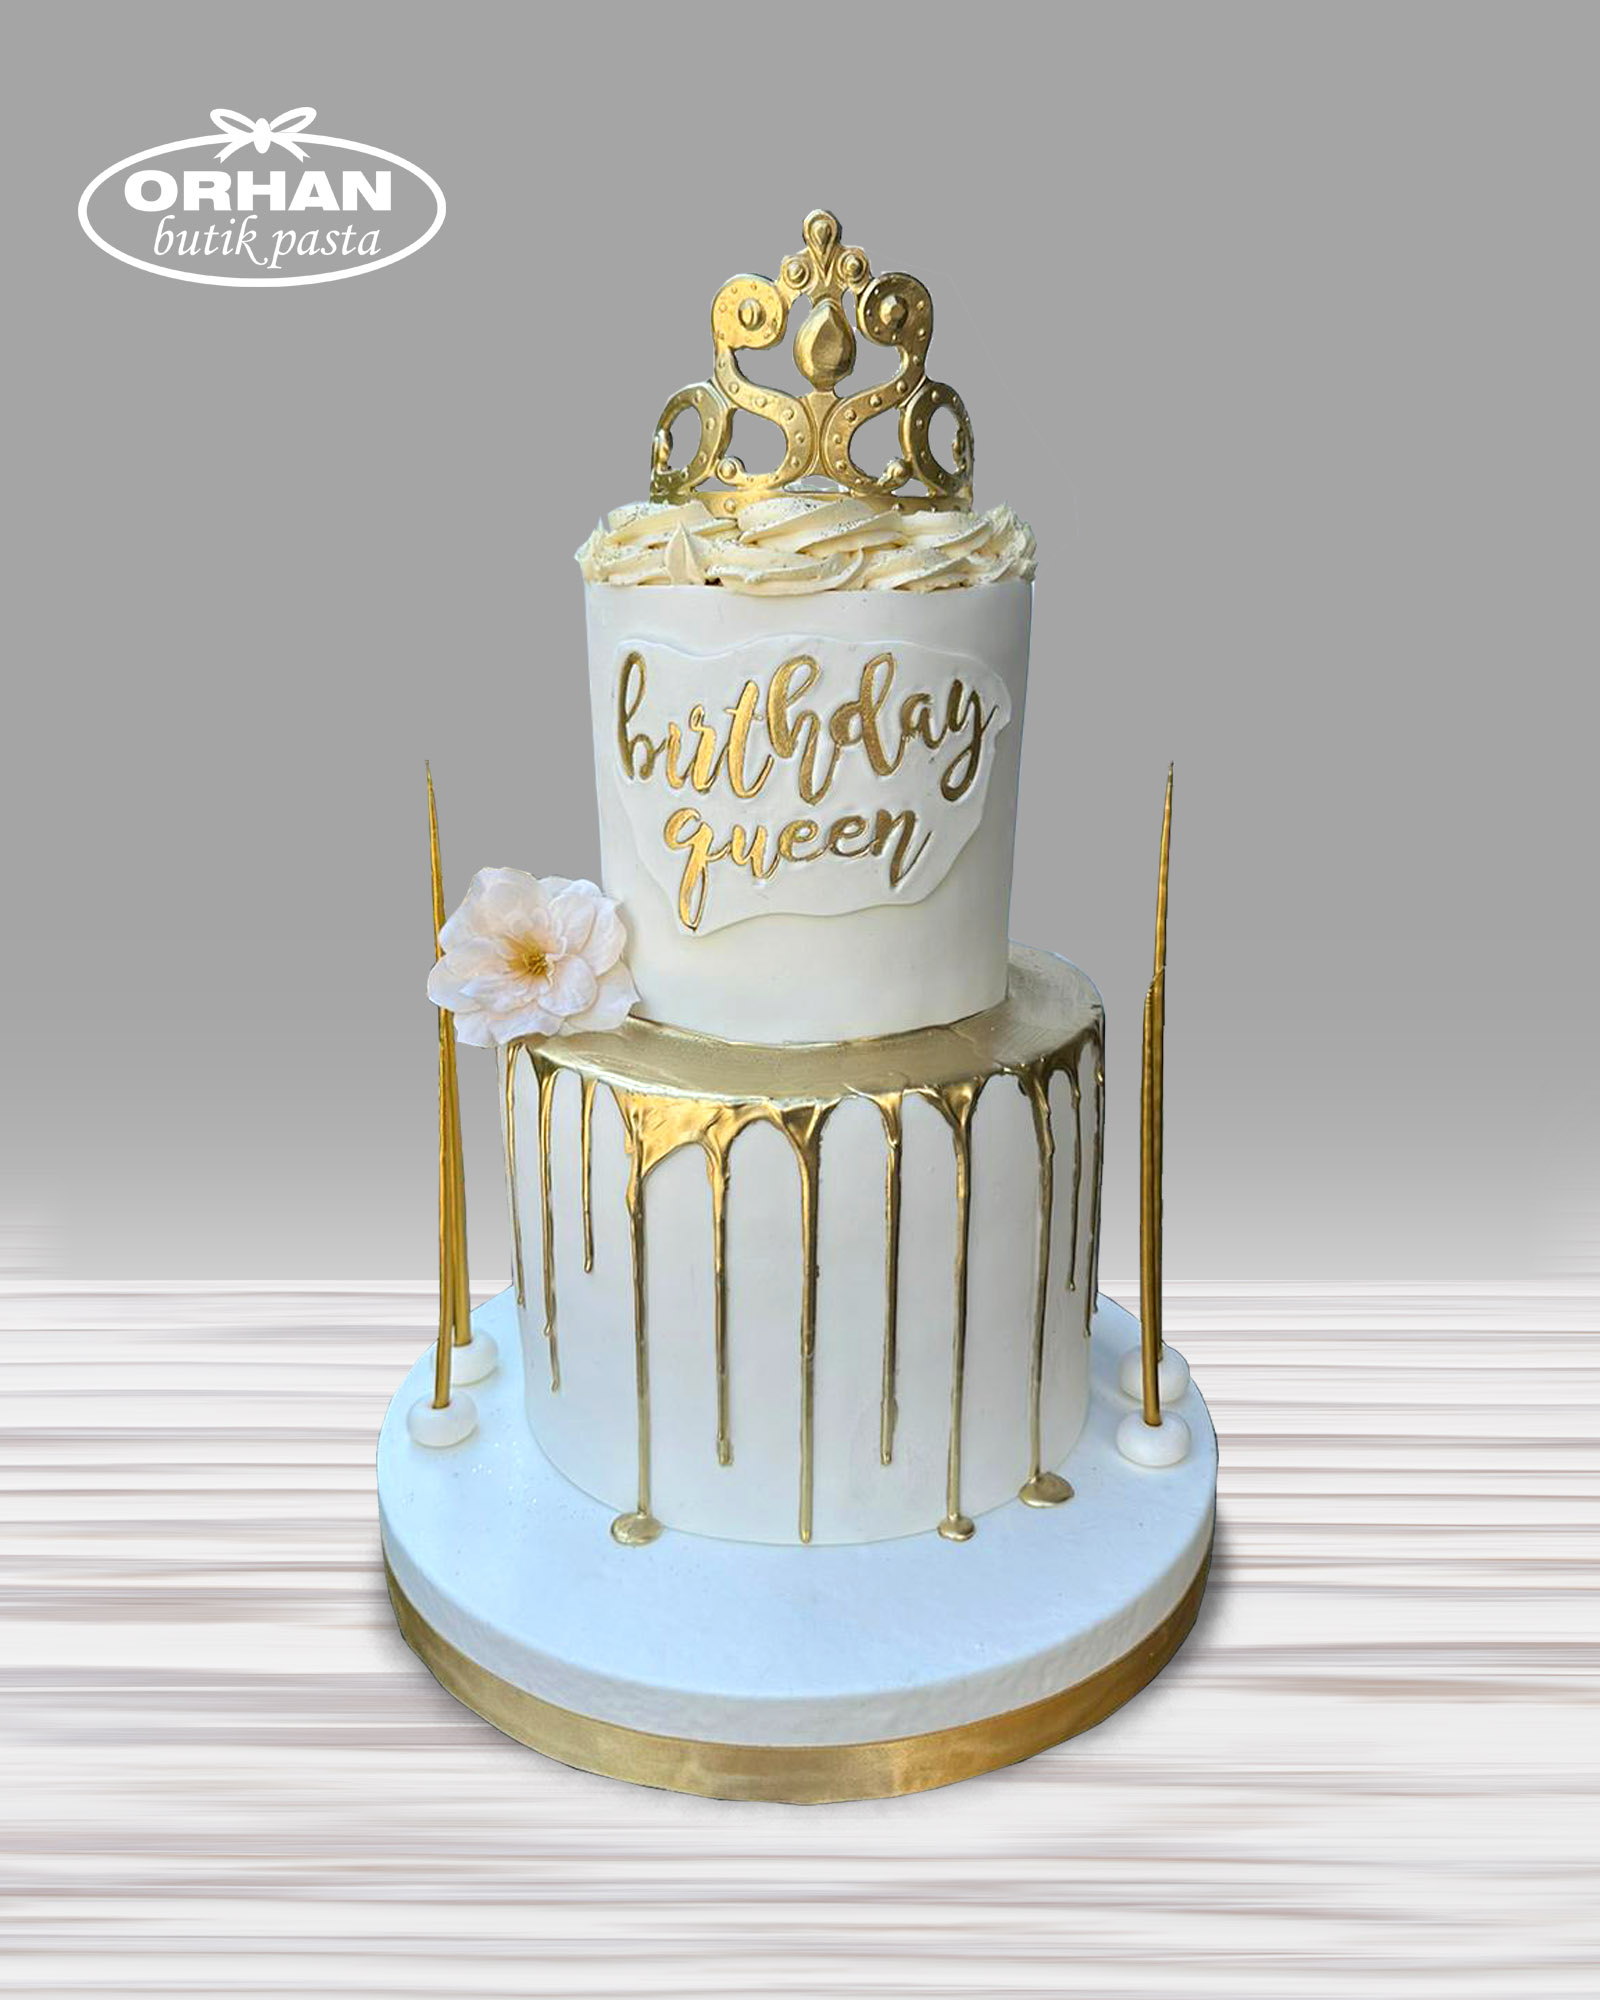 Birthday Queen Tasarım Doğum Günü Pastası